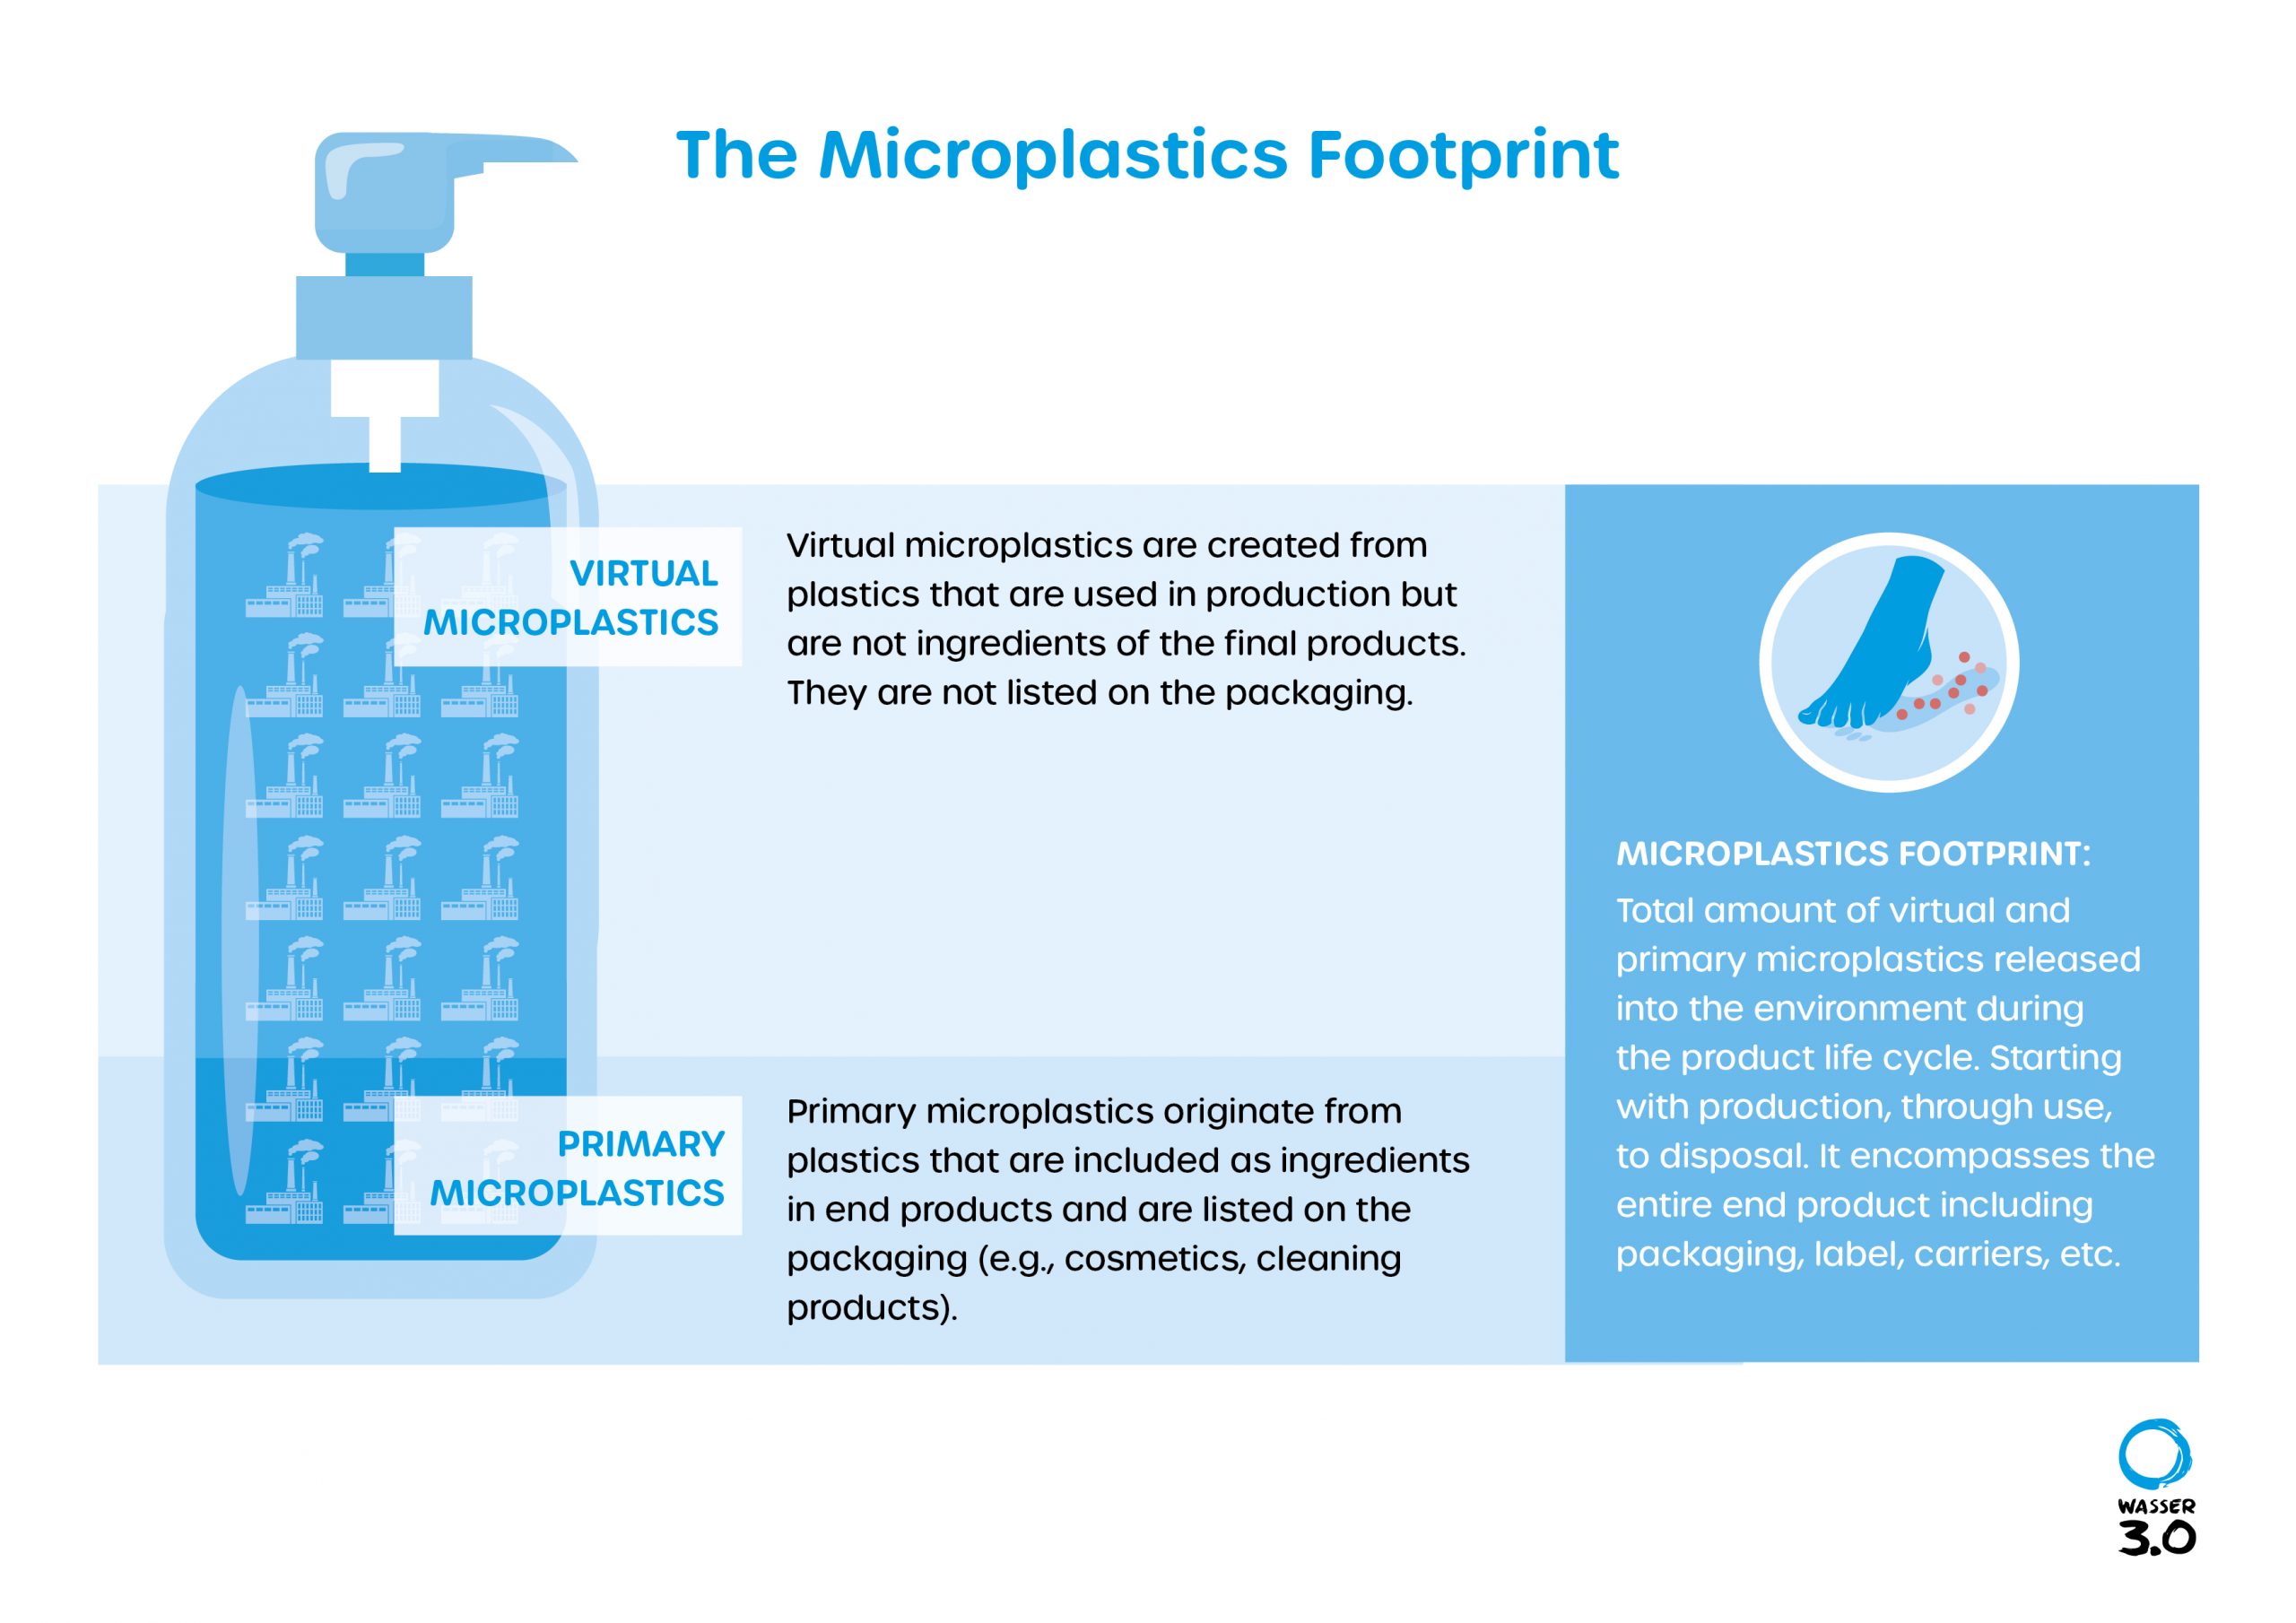 Microplastics Footprint